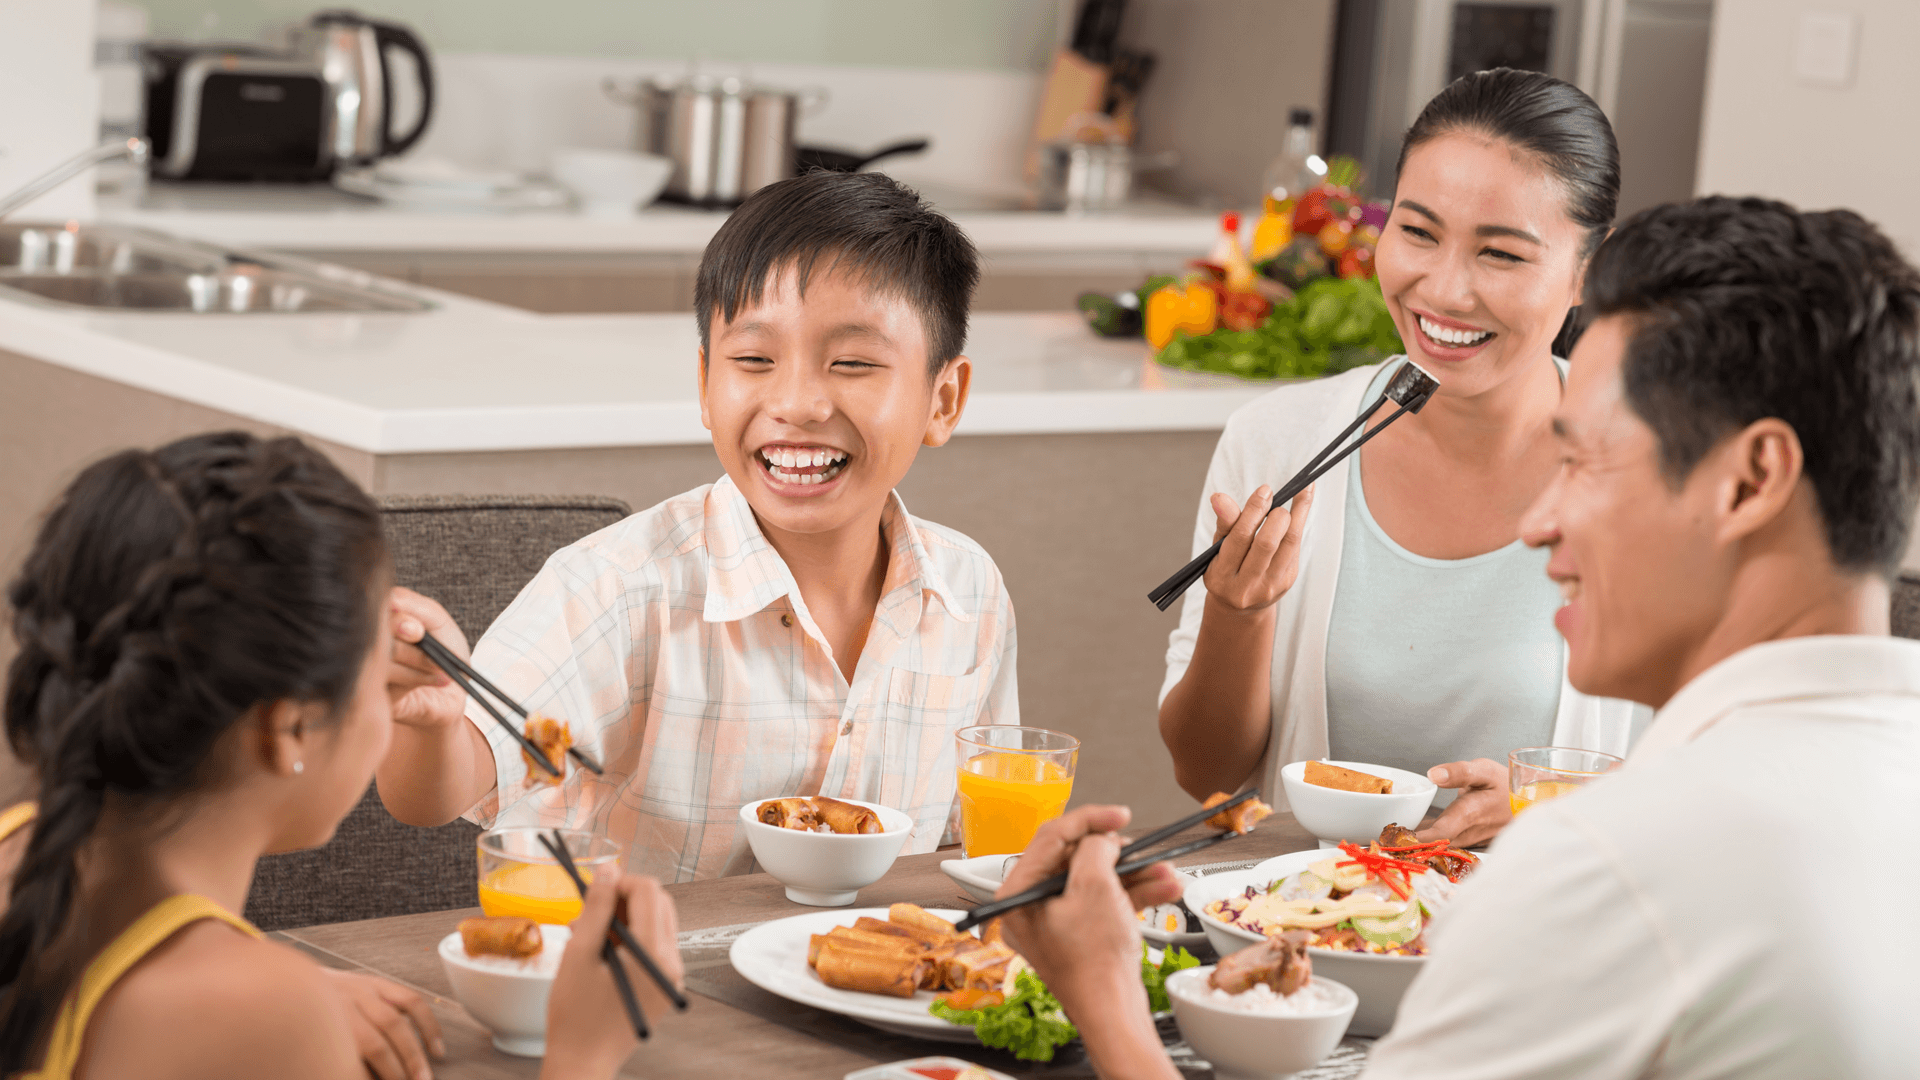 Thực đơn gia đình với đầy đủ hương vị và dinh dưỡng chắc chắn sẽ đem lại sự hài lòng cho mọi thành viên trong gia đình. Hãy cùng xem qua hình ảnh các món ăn trong thực đơn gia đình để tìm kiếm ý tưởng cho bữa cơm ngon nhất cho gia đình!